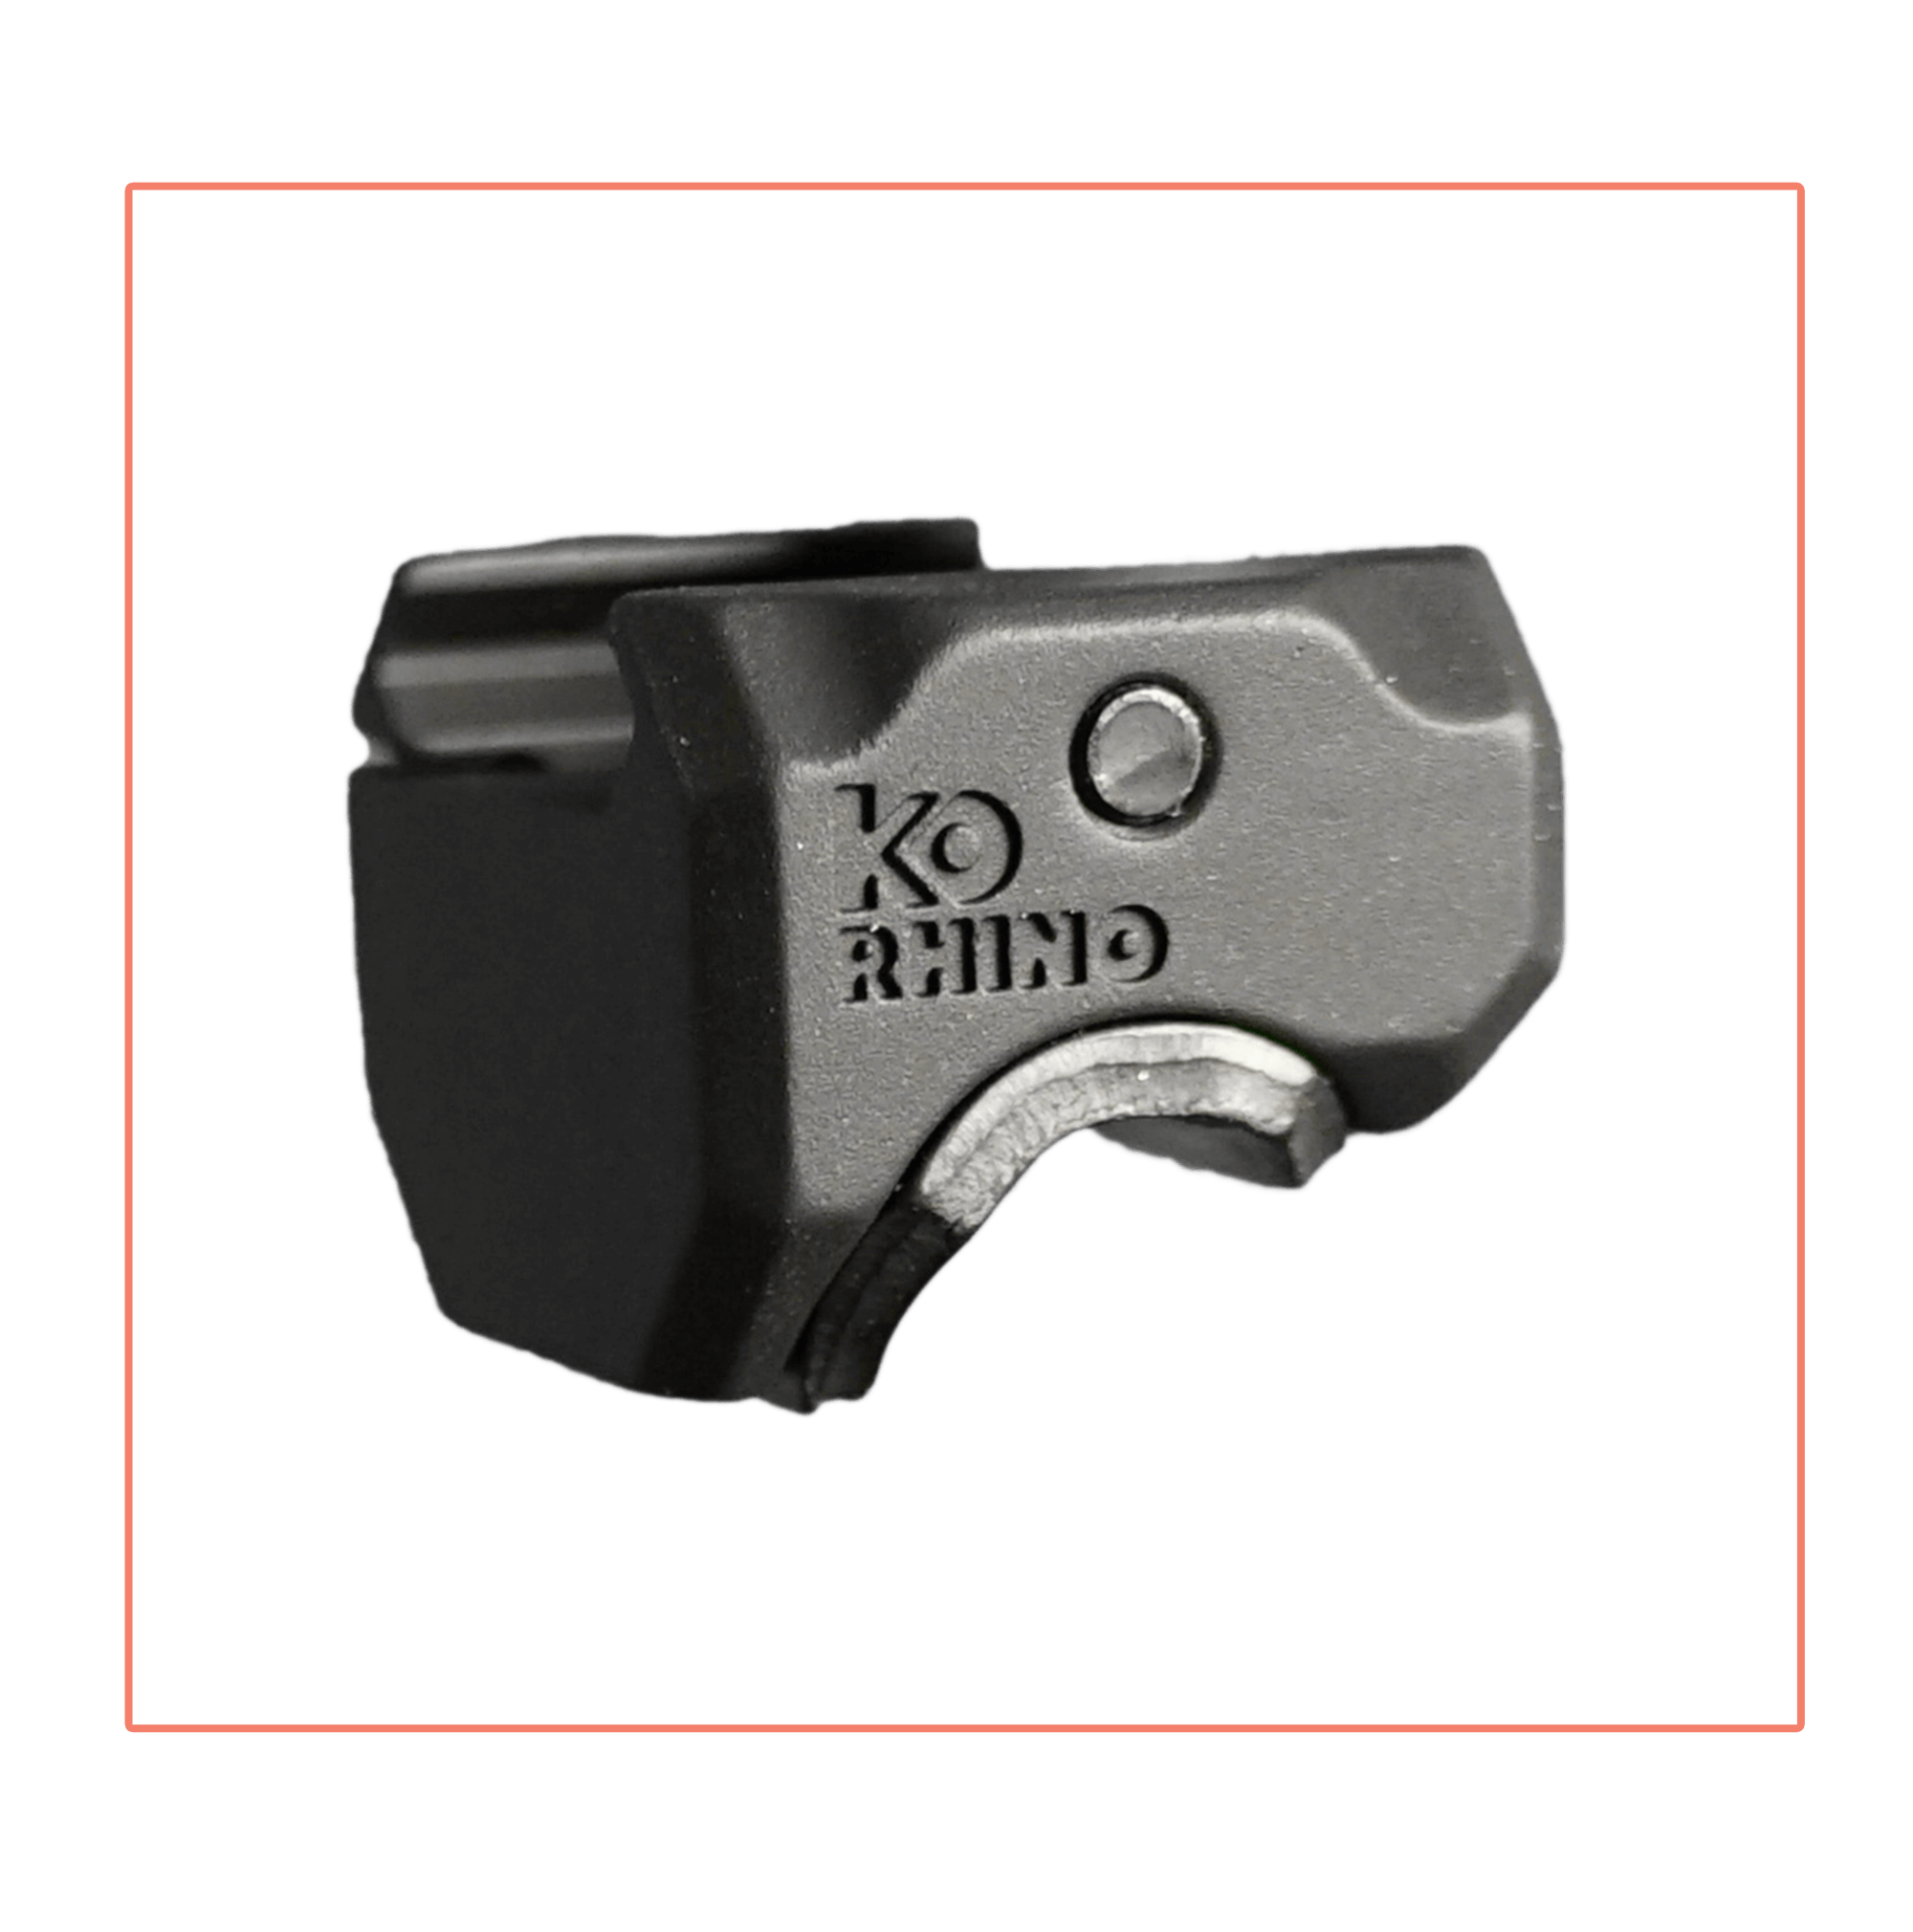 KO Rhino Rest Pro Kit